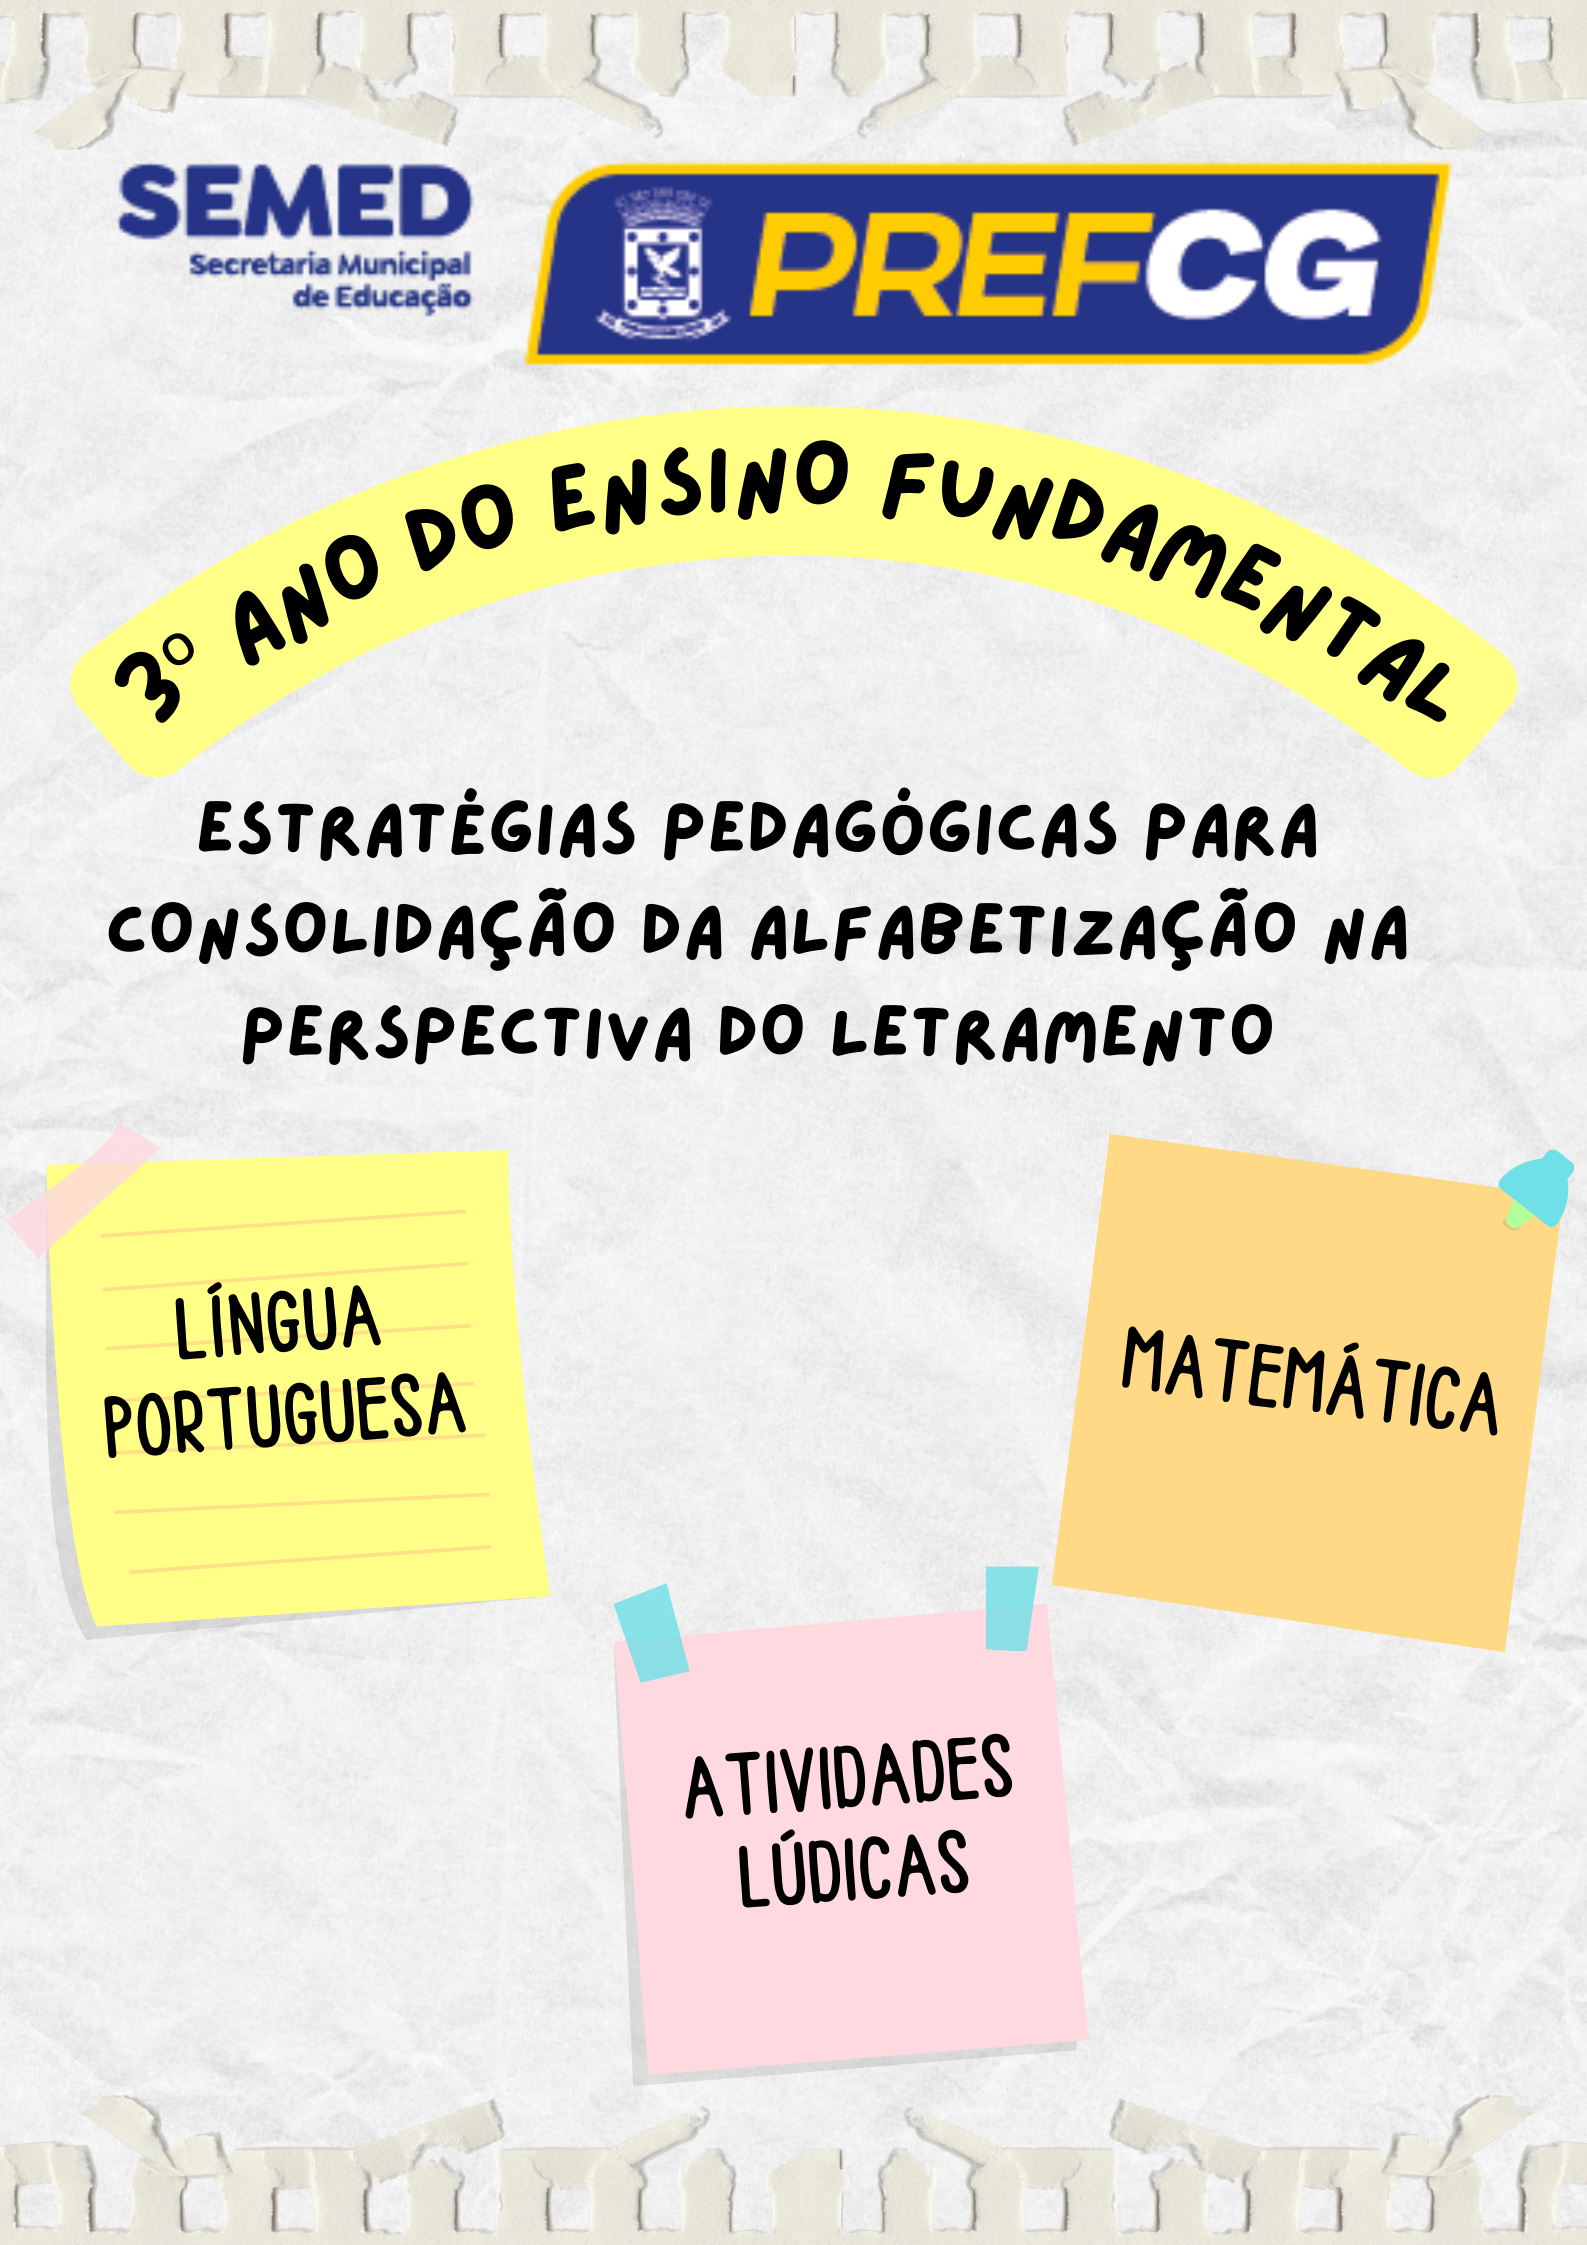 3º ANO - Estratégias Pedagógicas para Consolidação da Alfabetização, na Perspectiva do Letramento, em Língua Portuguesa e Matemática.